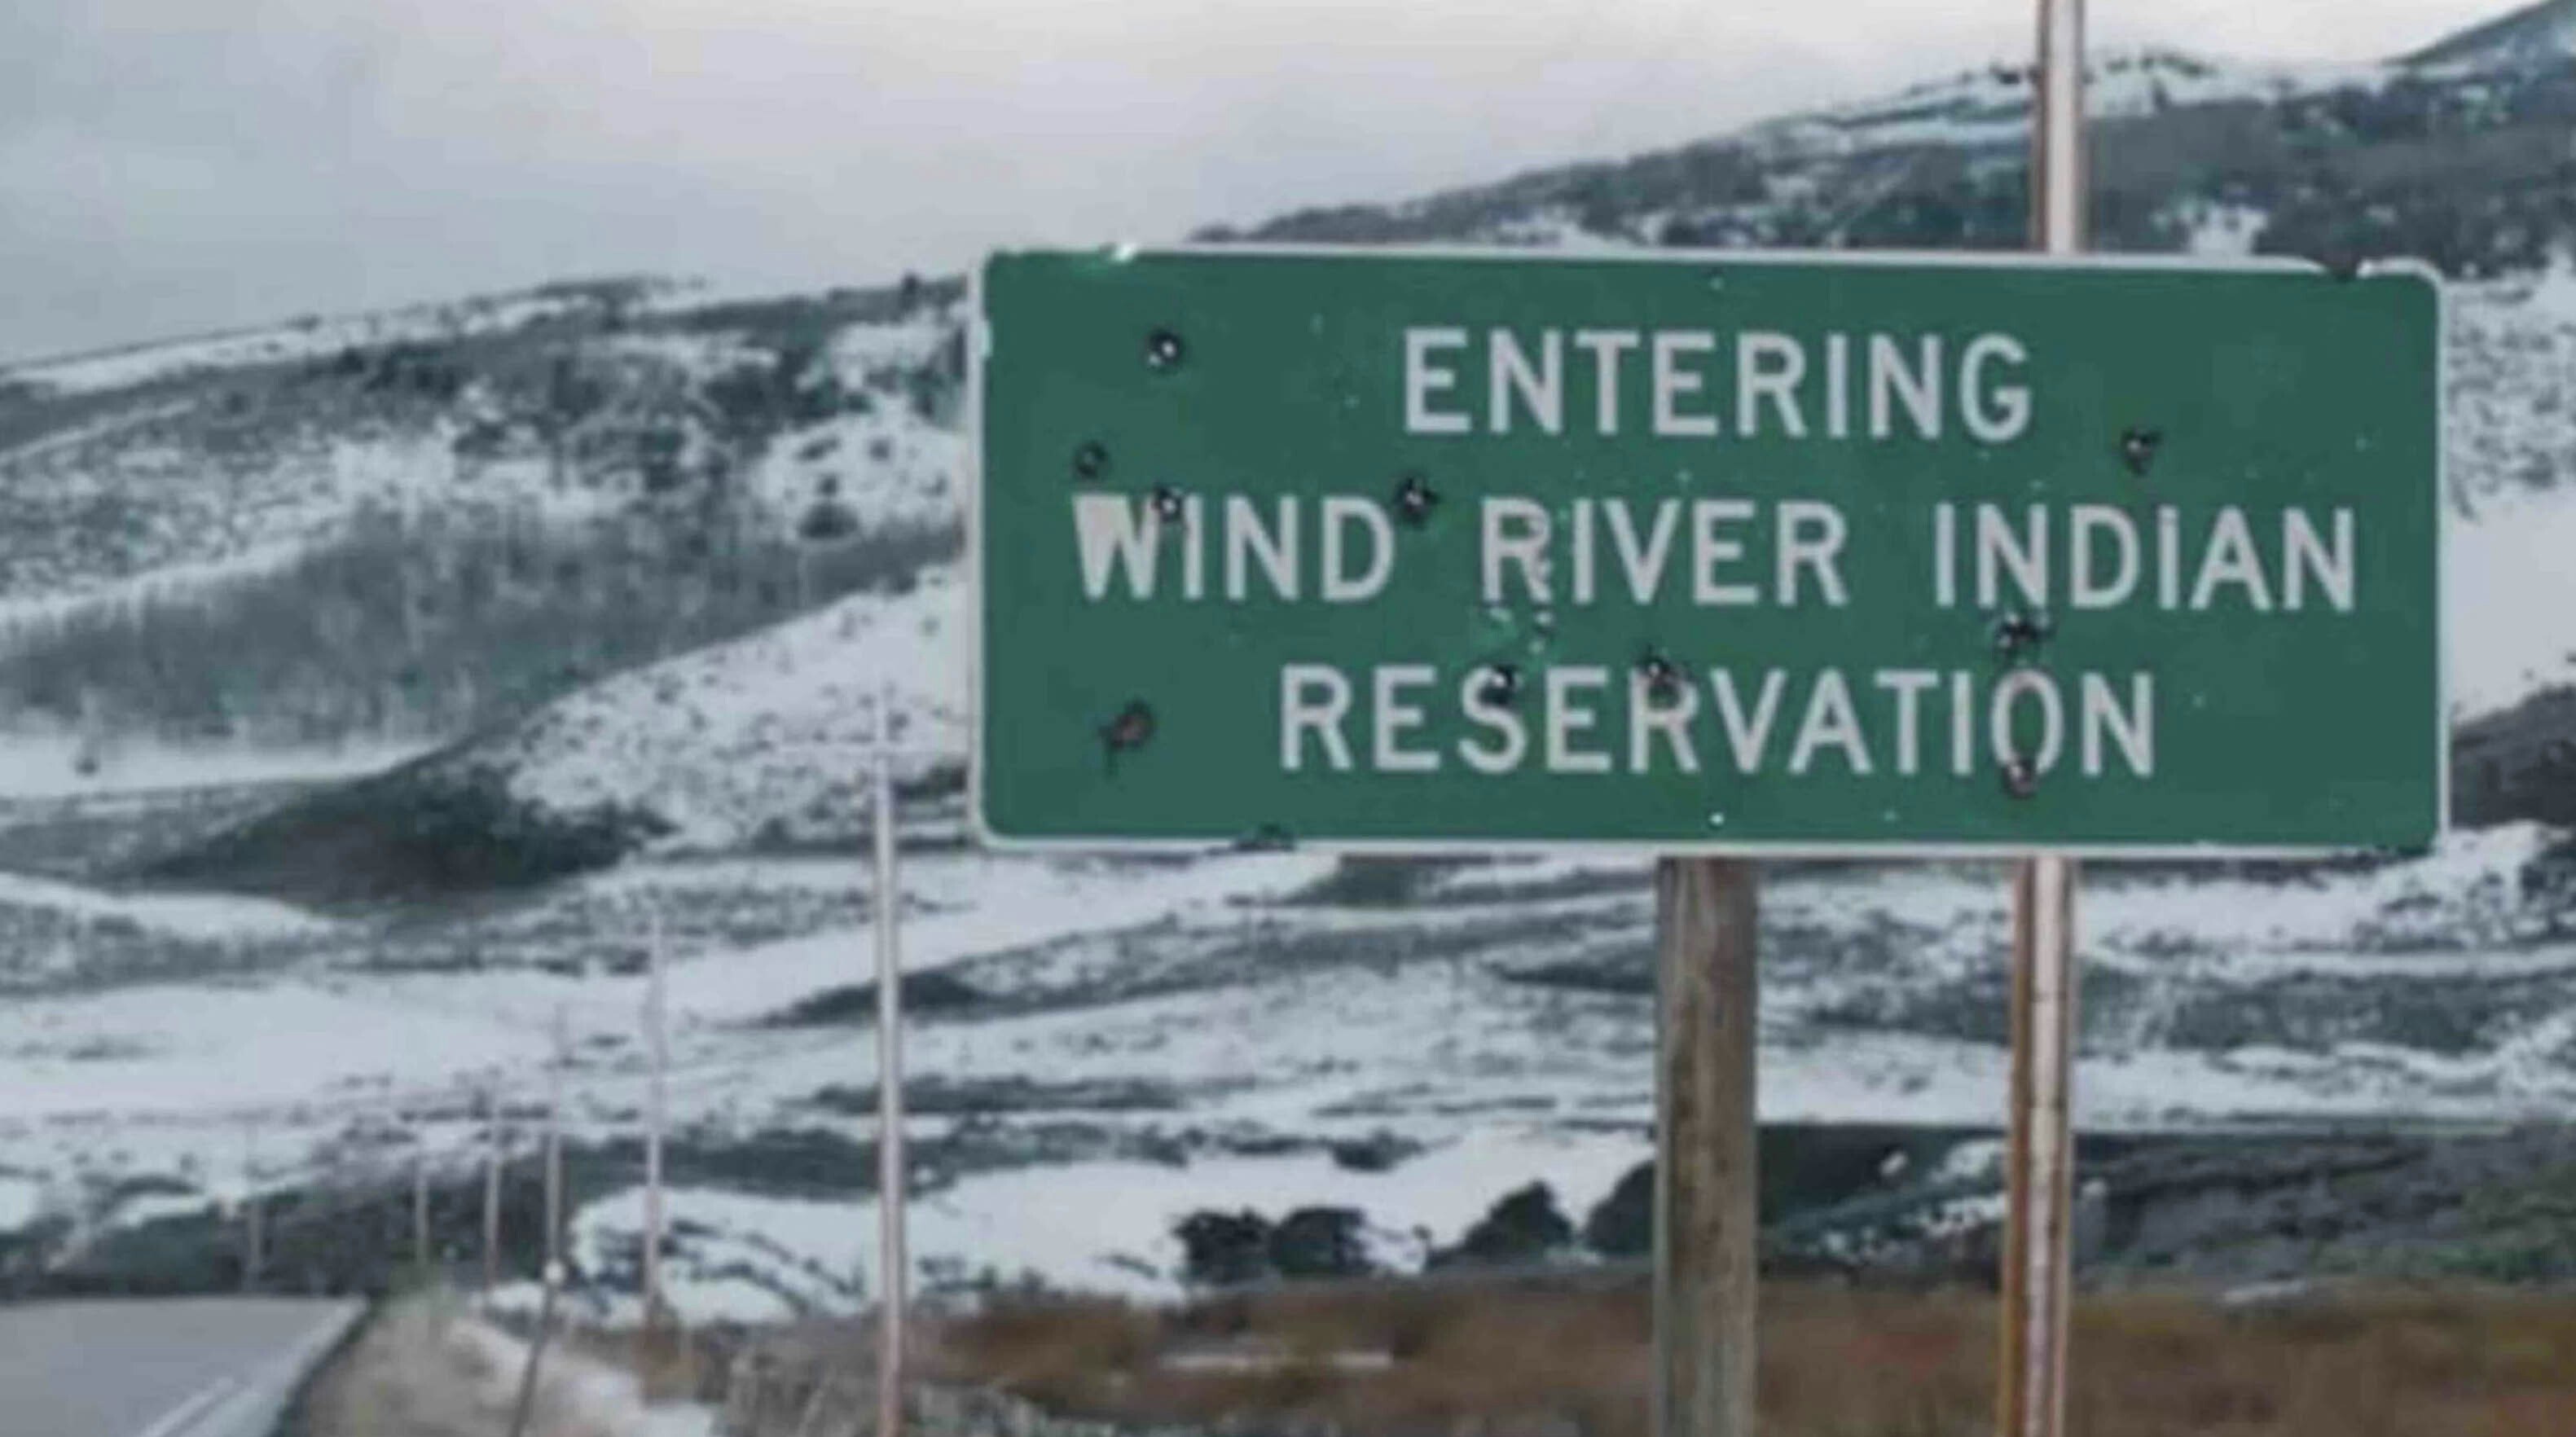 Wind river reservation sign 4 5 23